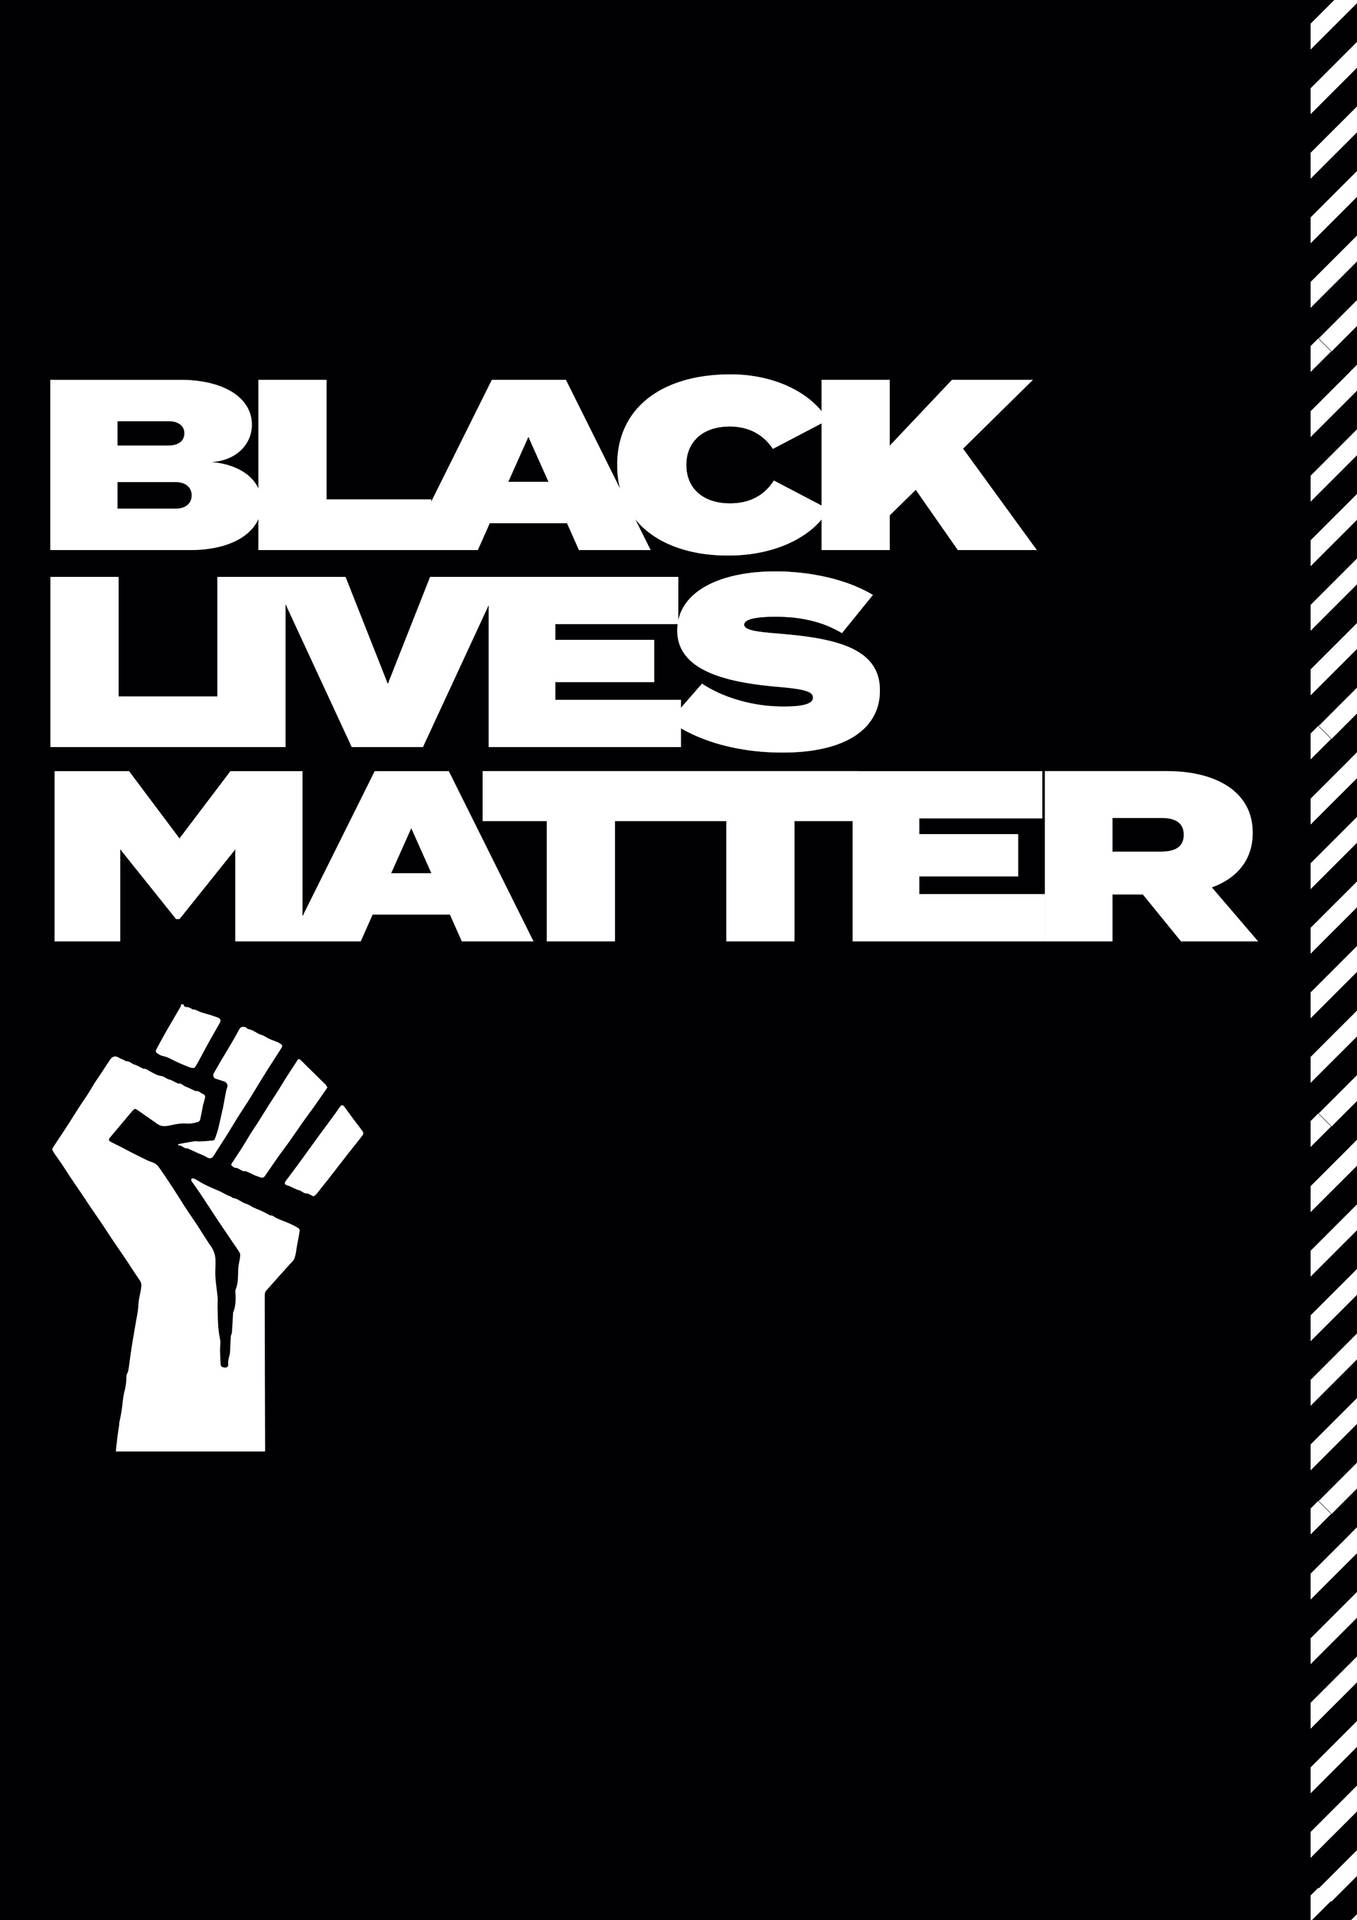 Black Lives Matter Notebook Design Wallpaper